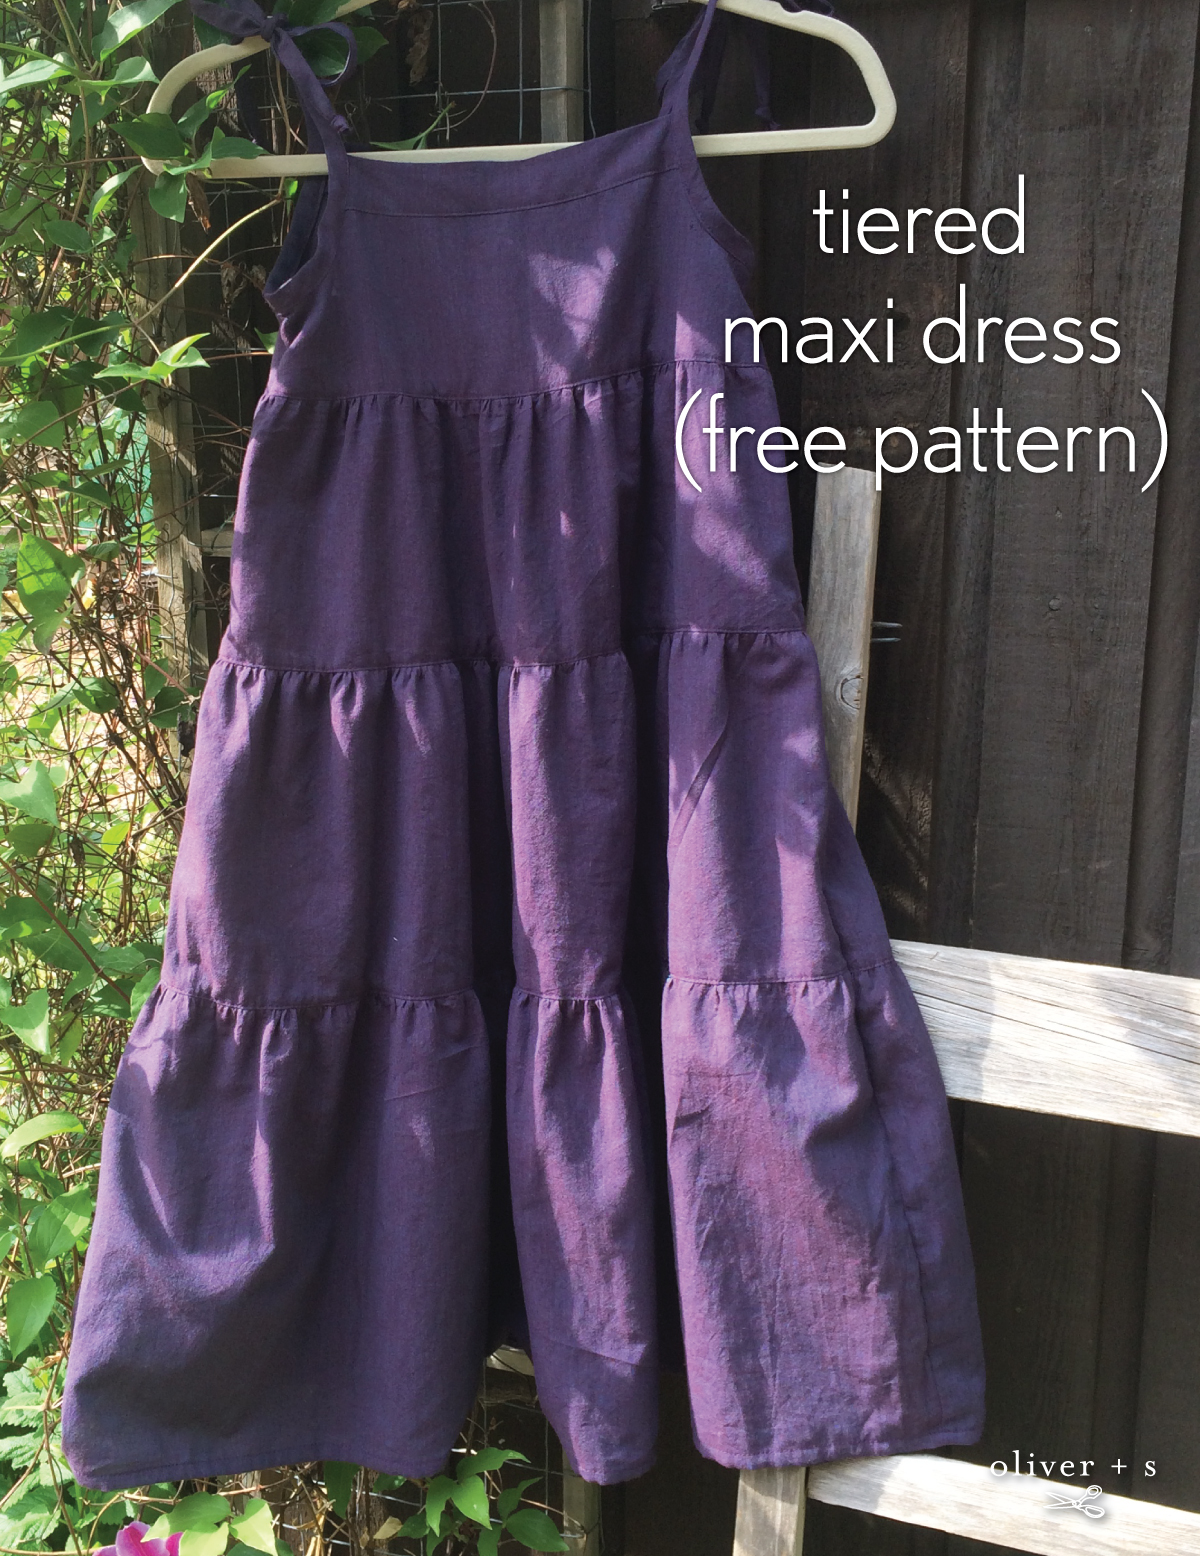 layered skirt pattern free